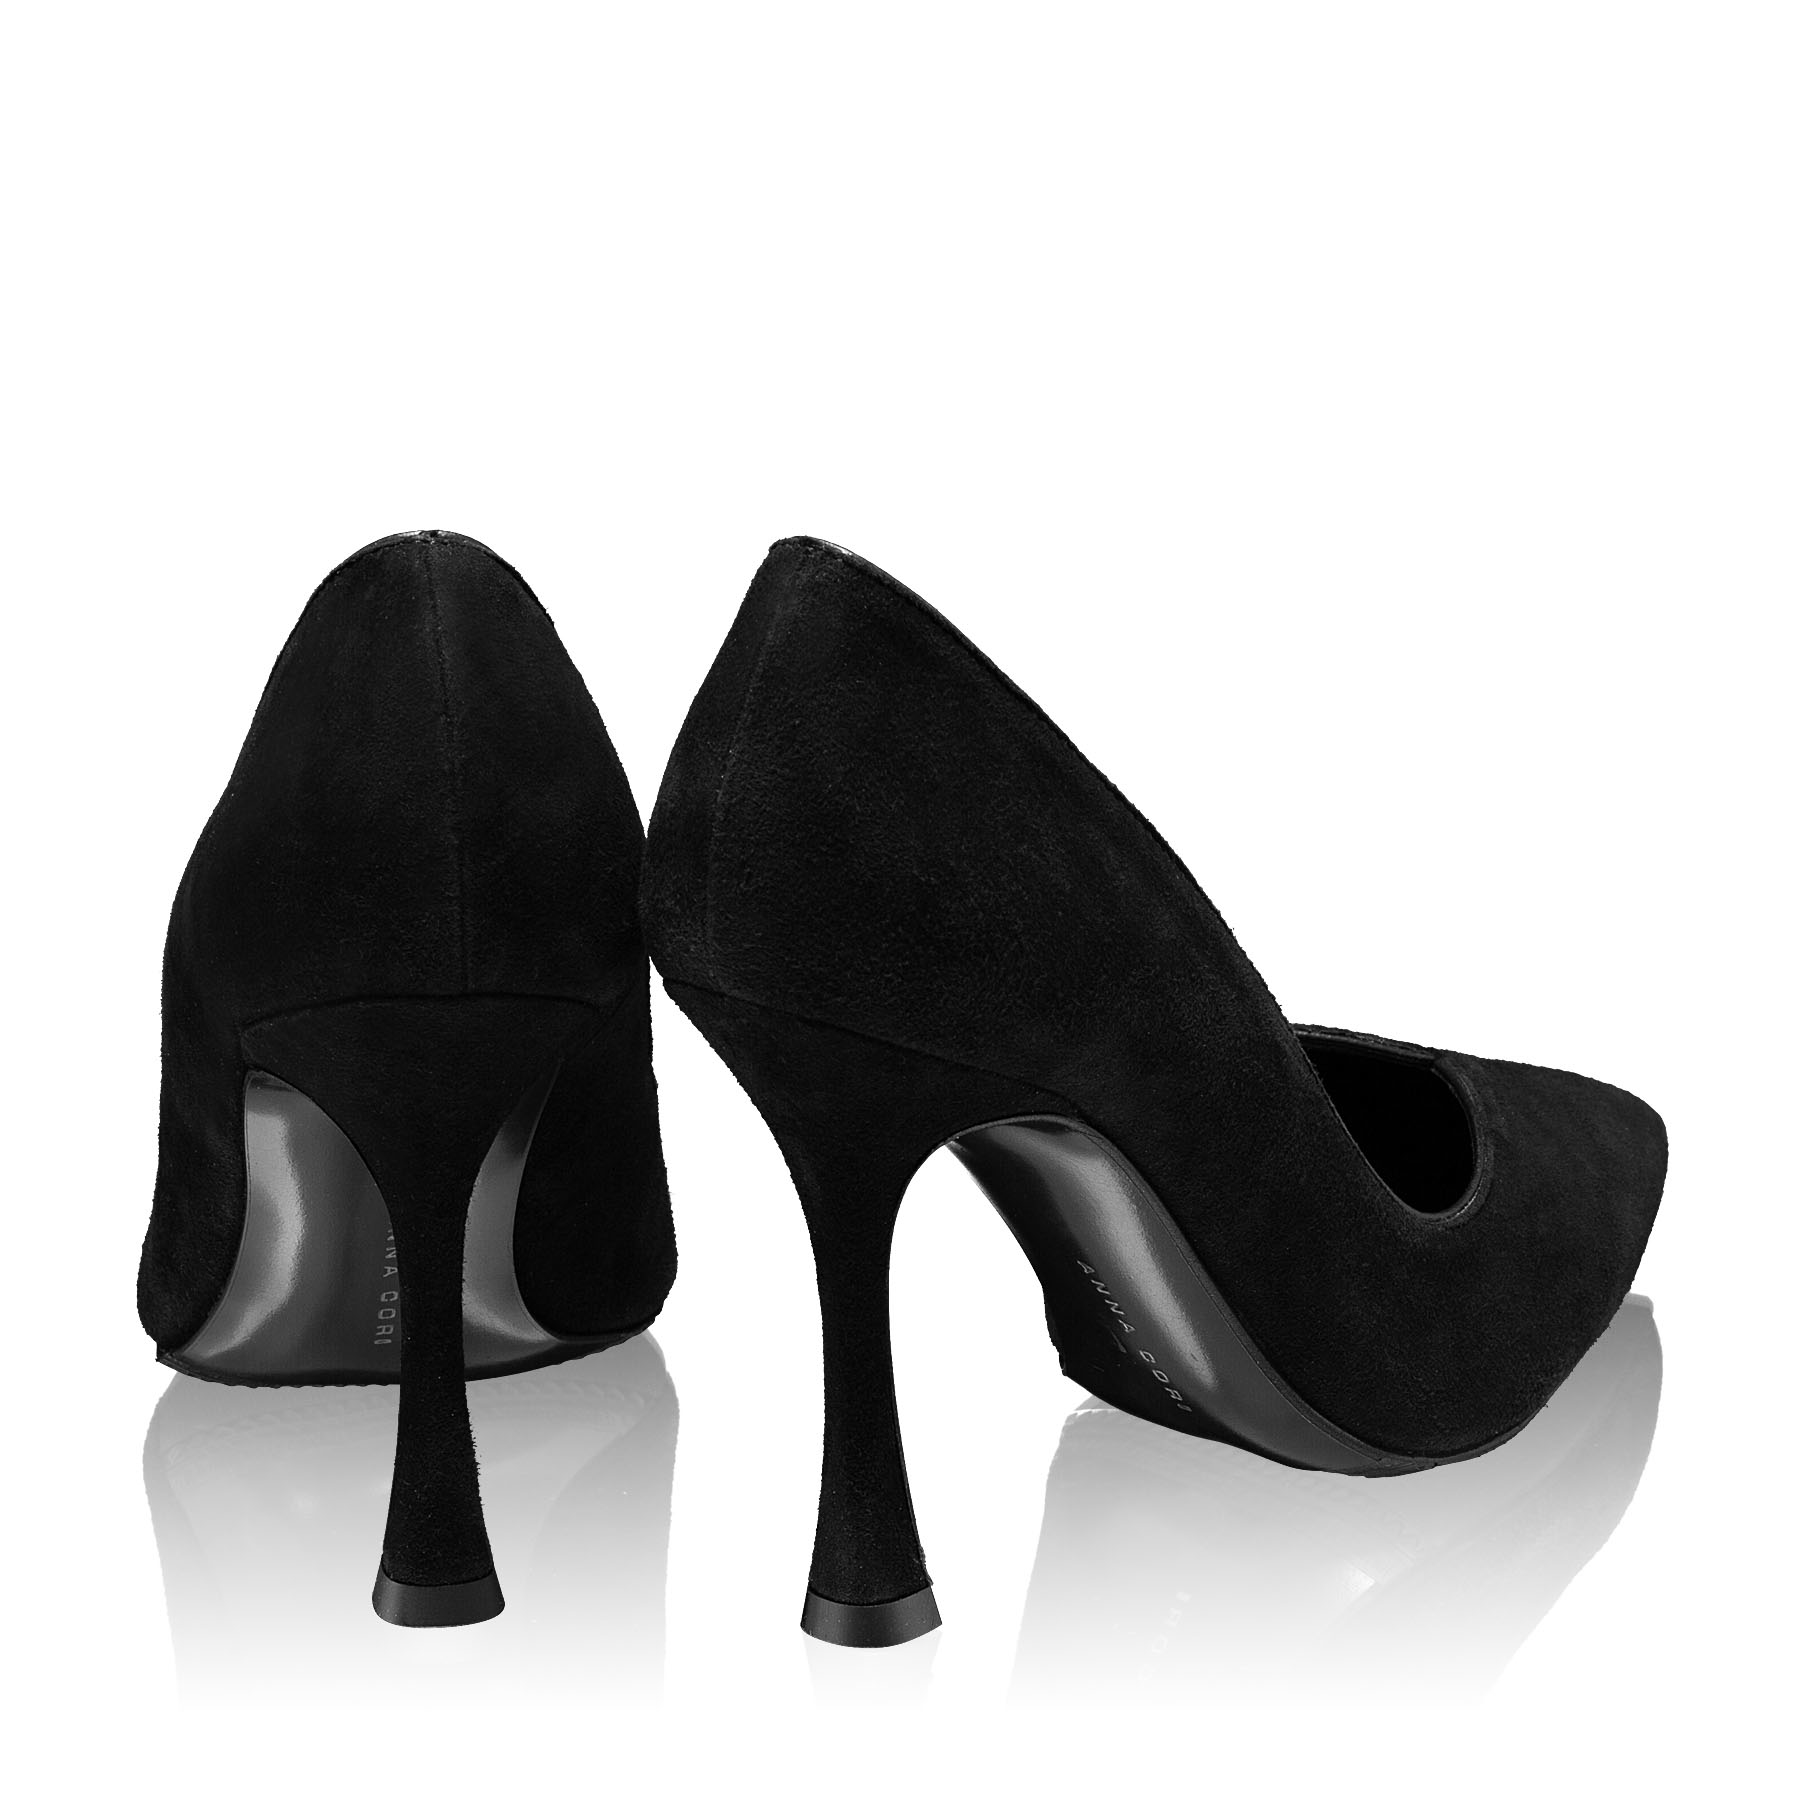 Imagine Pantofi Eleganti Dama 4521 Camoscio Negru